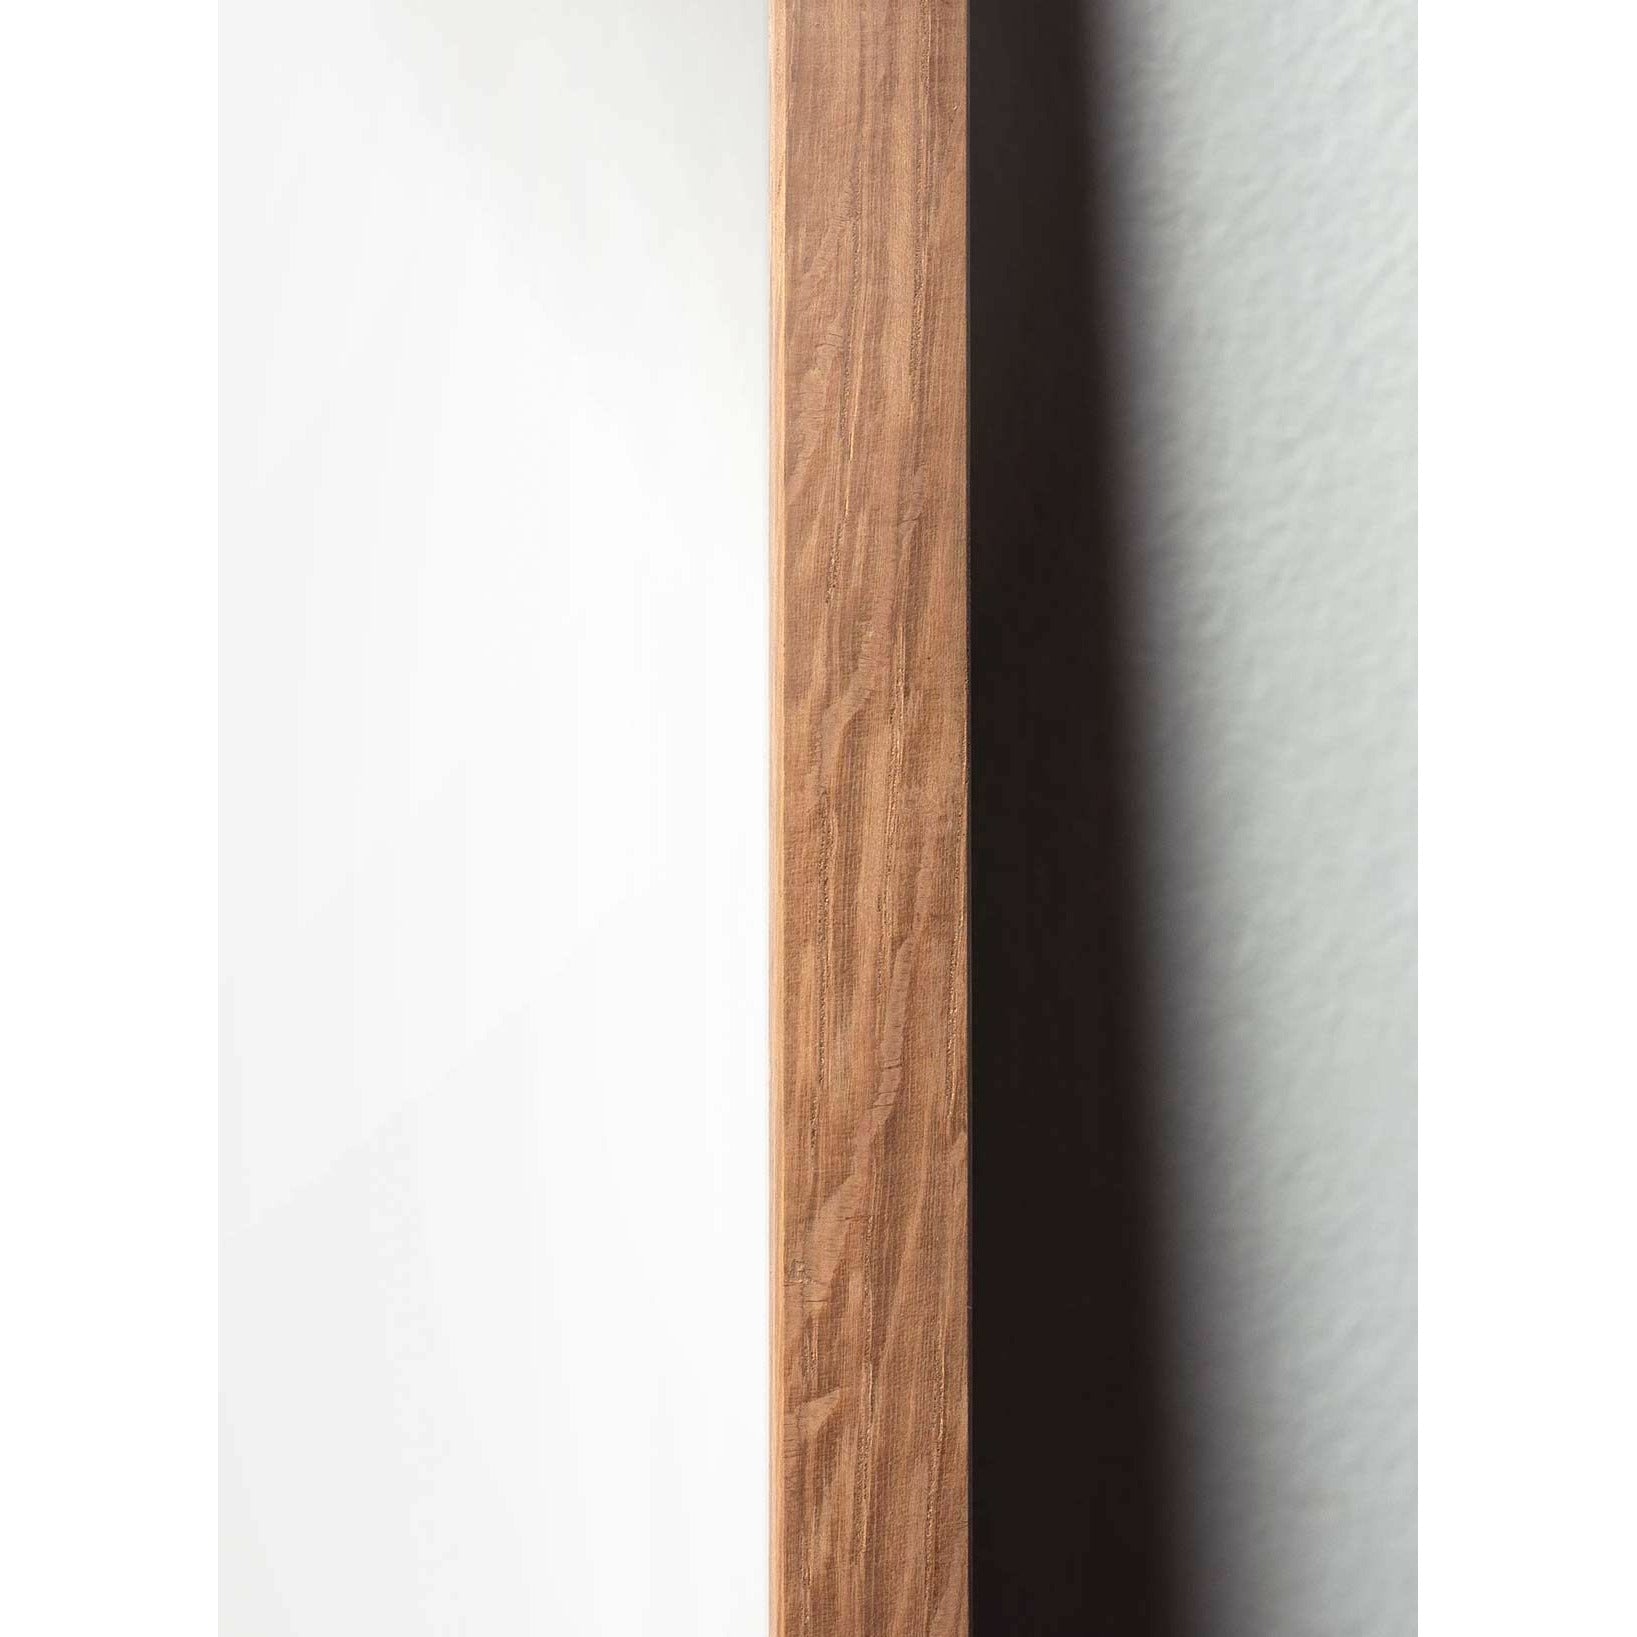 Póster clásico de hormigas de creación, marco hecho de madera clara de 70x100 cm, fondo blanco